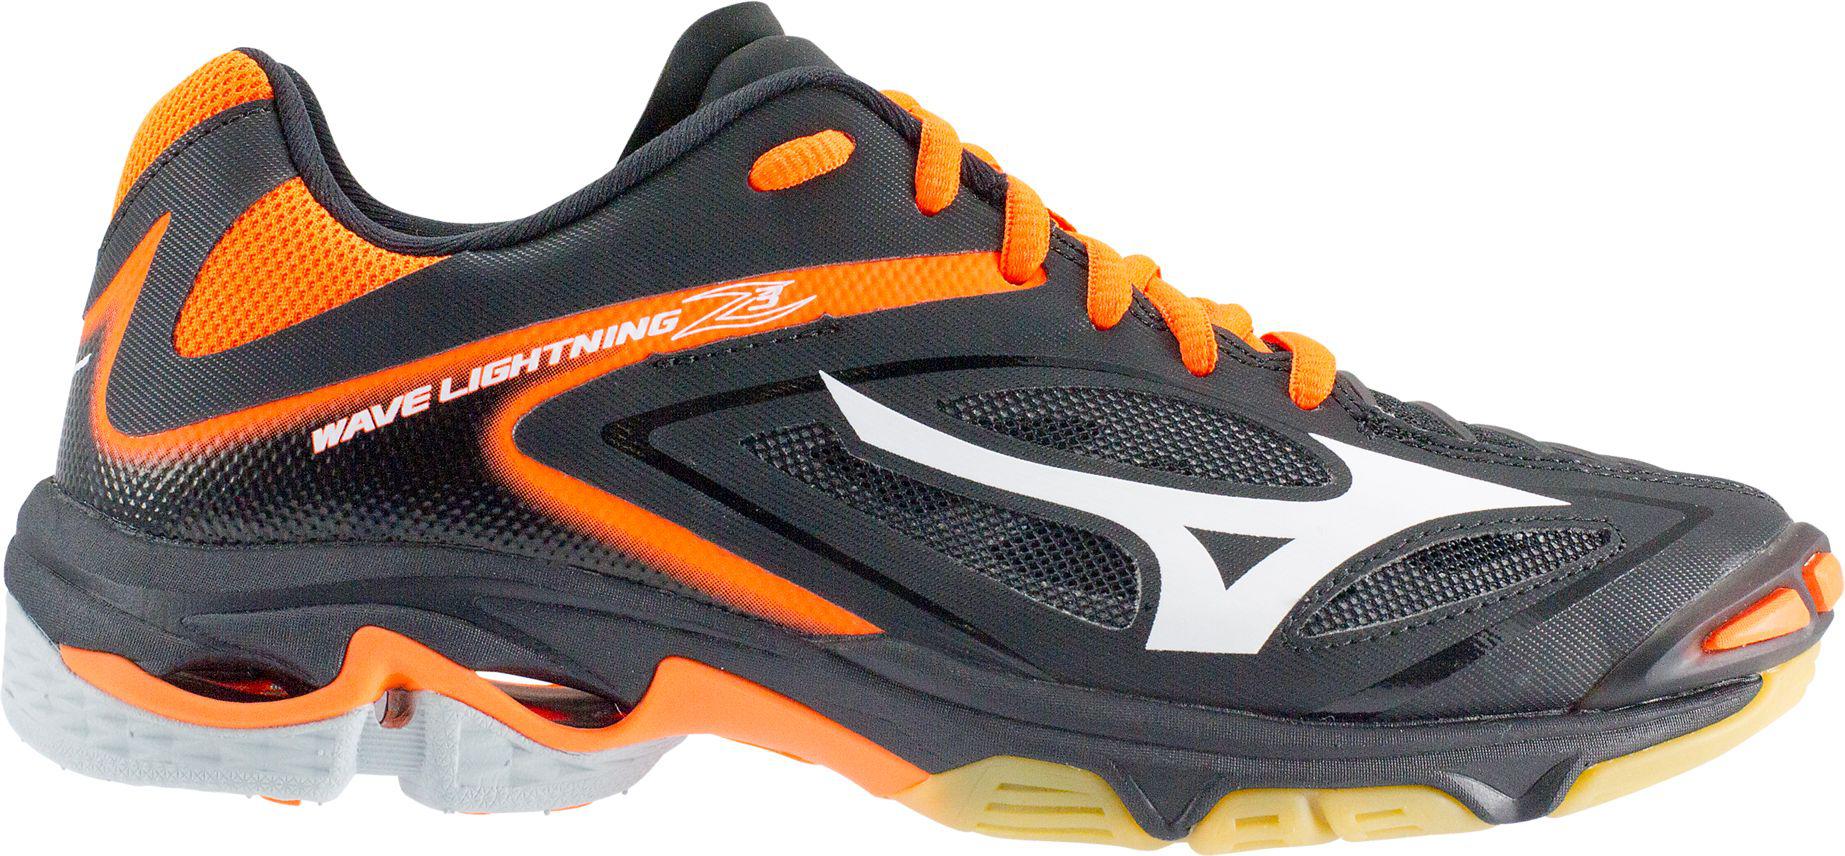 Mizuno Rubber Wave Lightning Z3 Volleyball Shoes in Black/Orange (Orange) |  Lyst